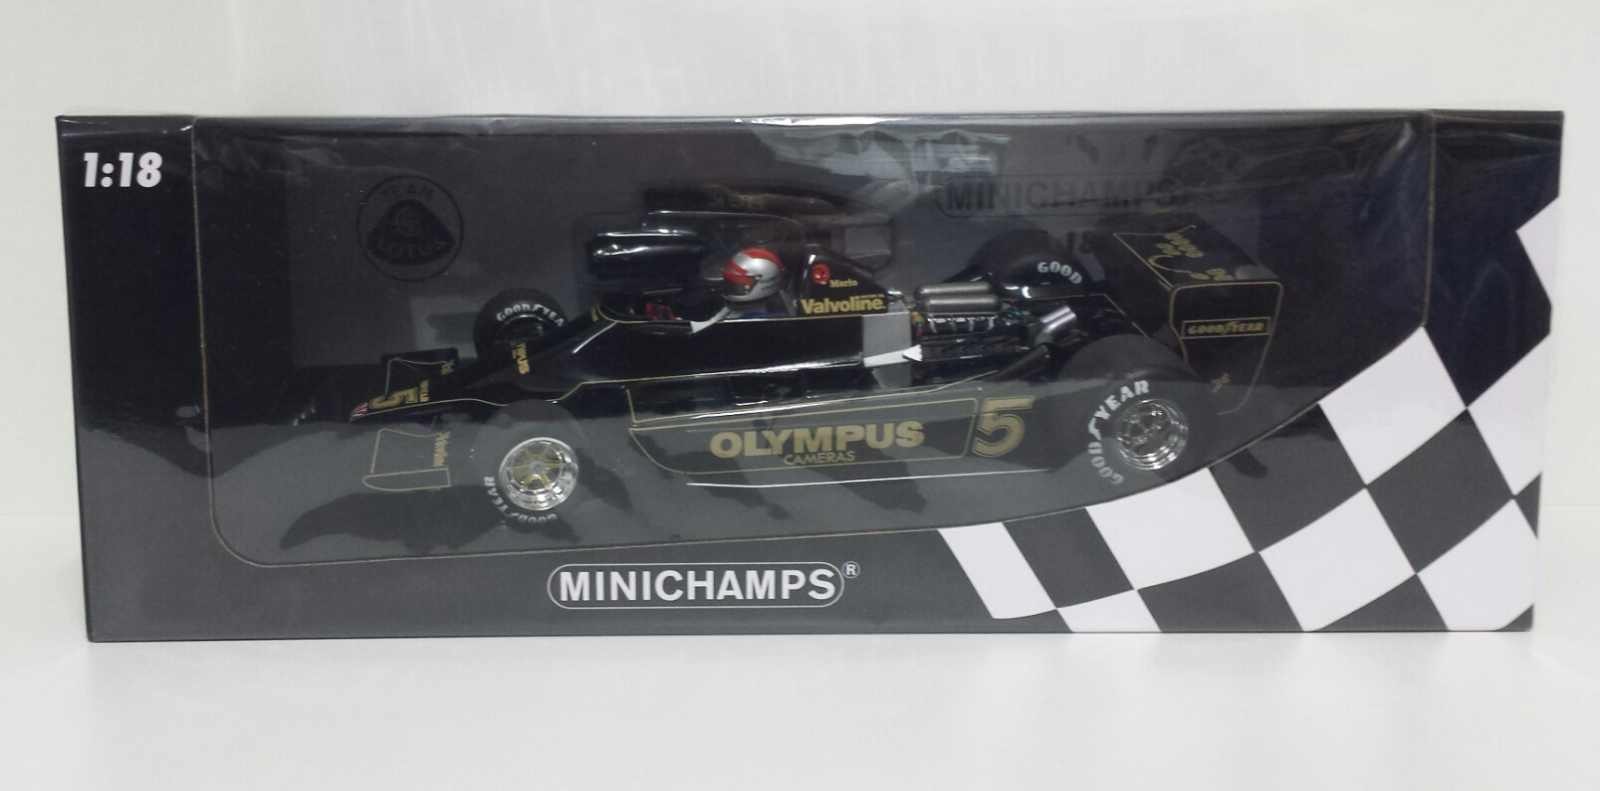 MINICHAMPS 1/18 MARIO ANDRETTI MODEL LOTUS FORD 79 F1 WORLD CHAMPION 1978